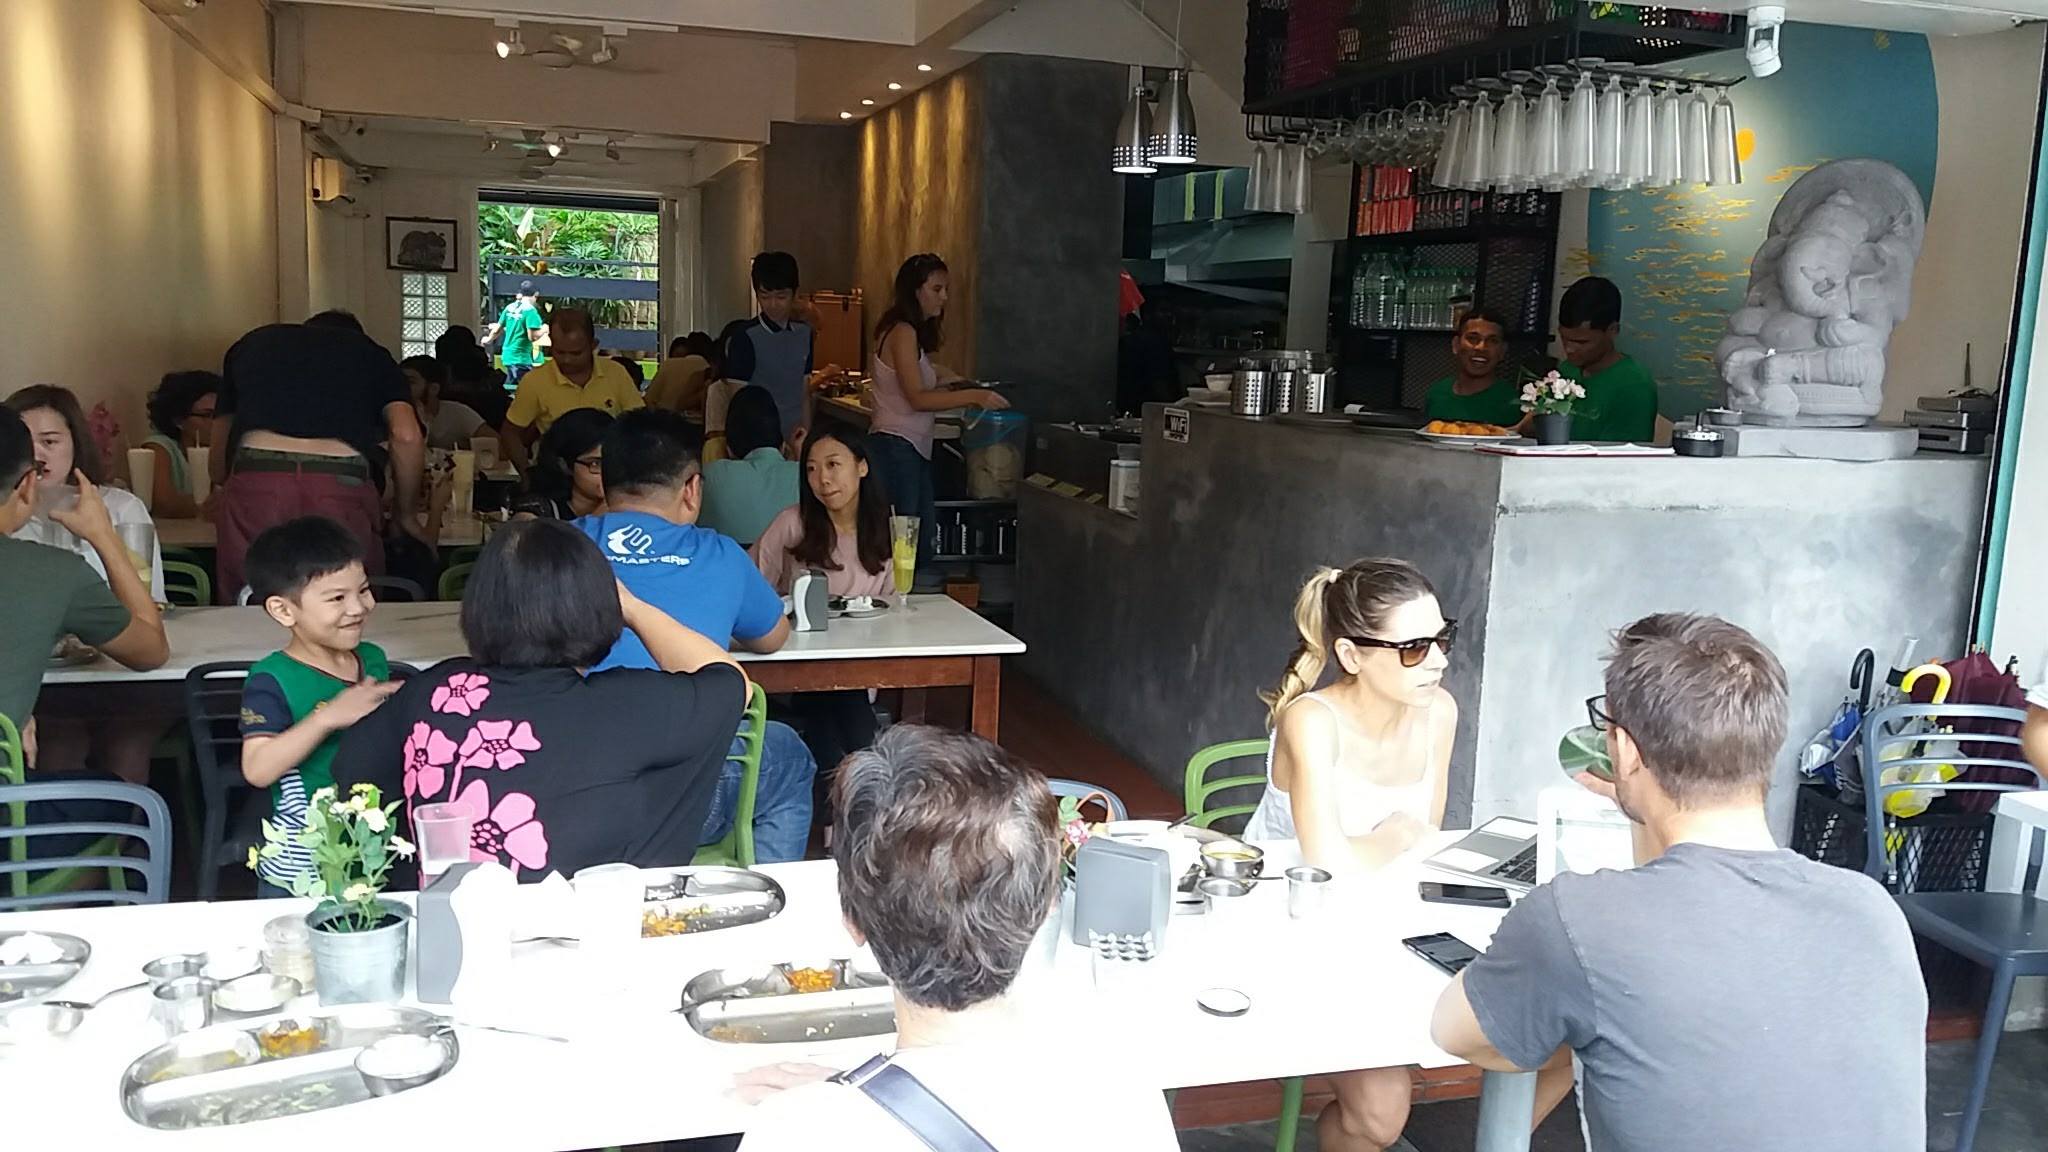 The busy Ganga Cafe in Kuala Lumpur